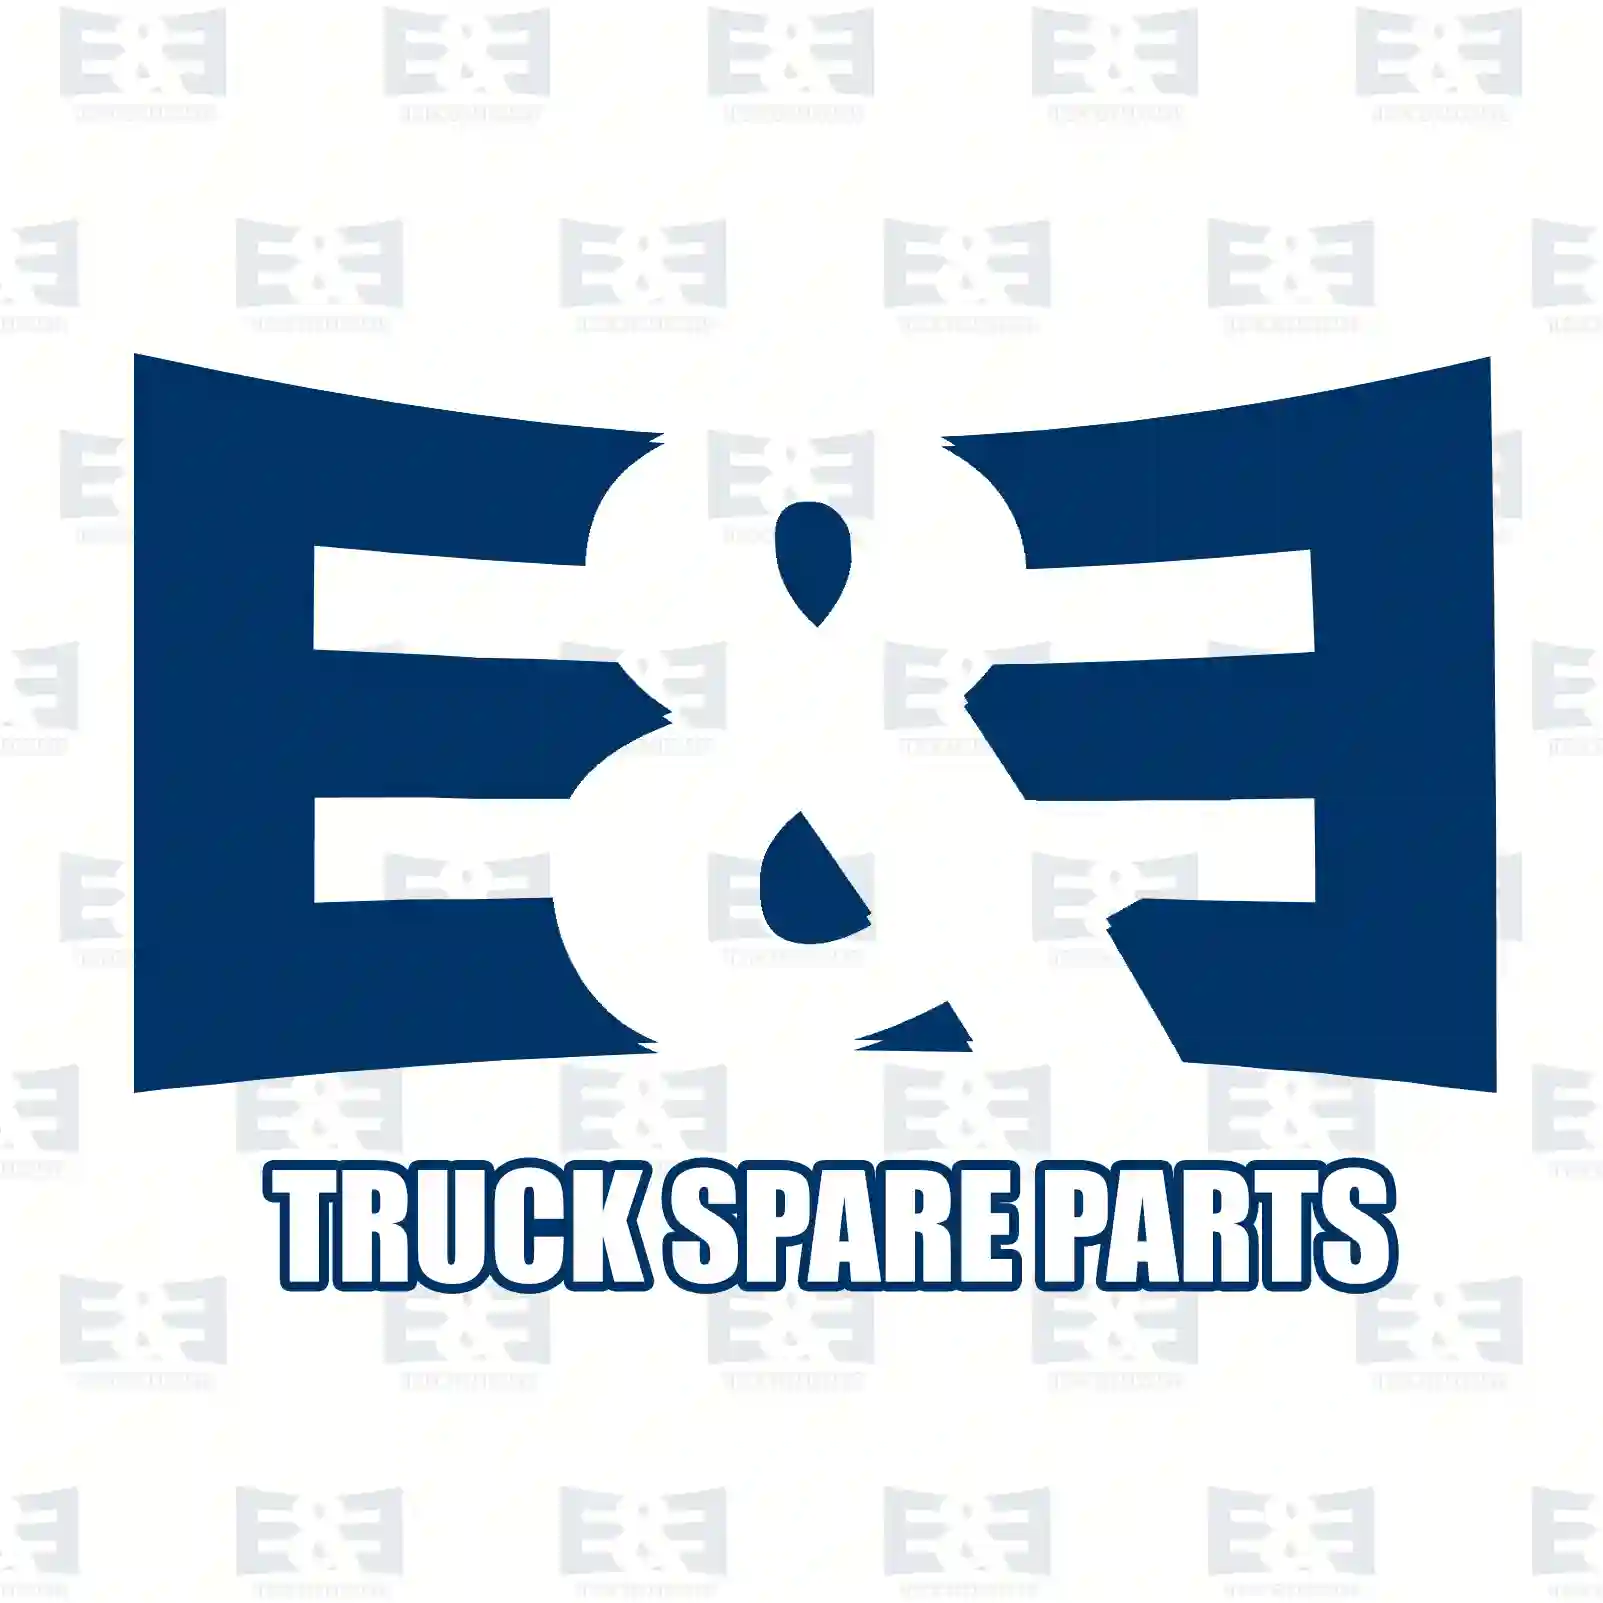 Fuse, 2E2286227, 07938100009, 88254360004, 1404273, 382324, , ||  2E2286227 E&E Truck Spare Parts | Truck Spare Parts, Auotomotive Spare Parts Fuse, 2E2286227, 07938100009, 88254360004, 1404273, 382324, , ||  2E2286227 E&E Truck Spare Parts | Truck Spare Parts, Auotomotive Spare Parts